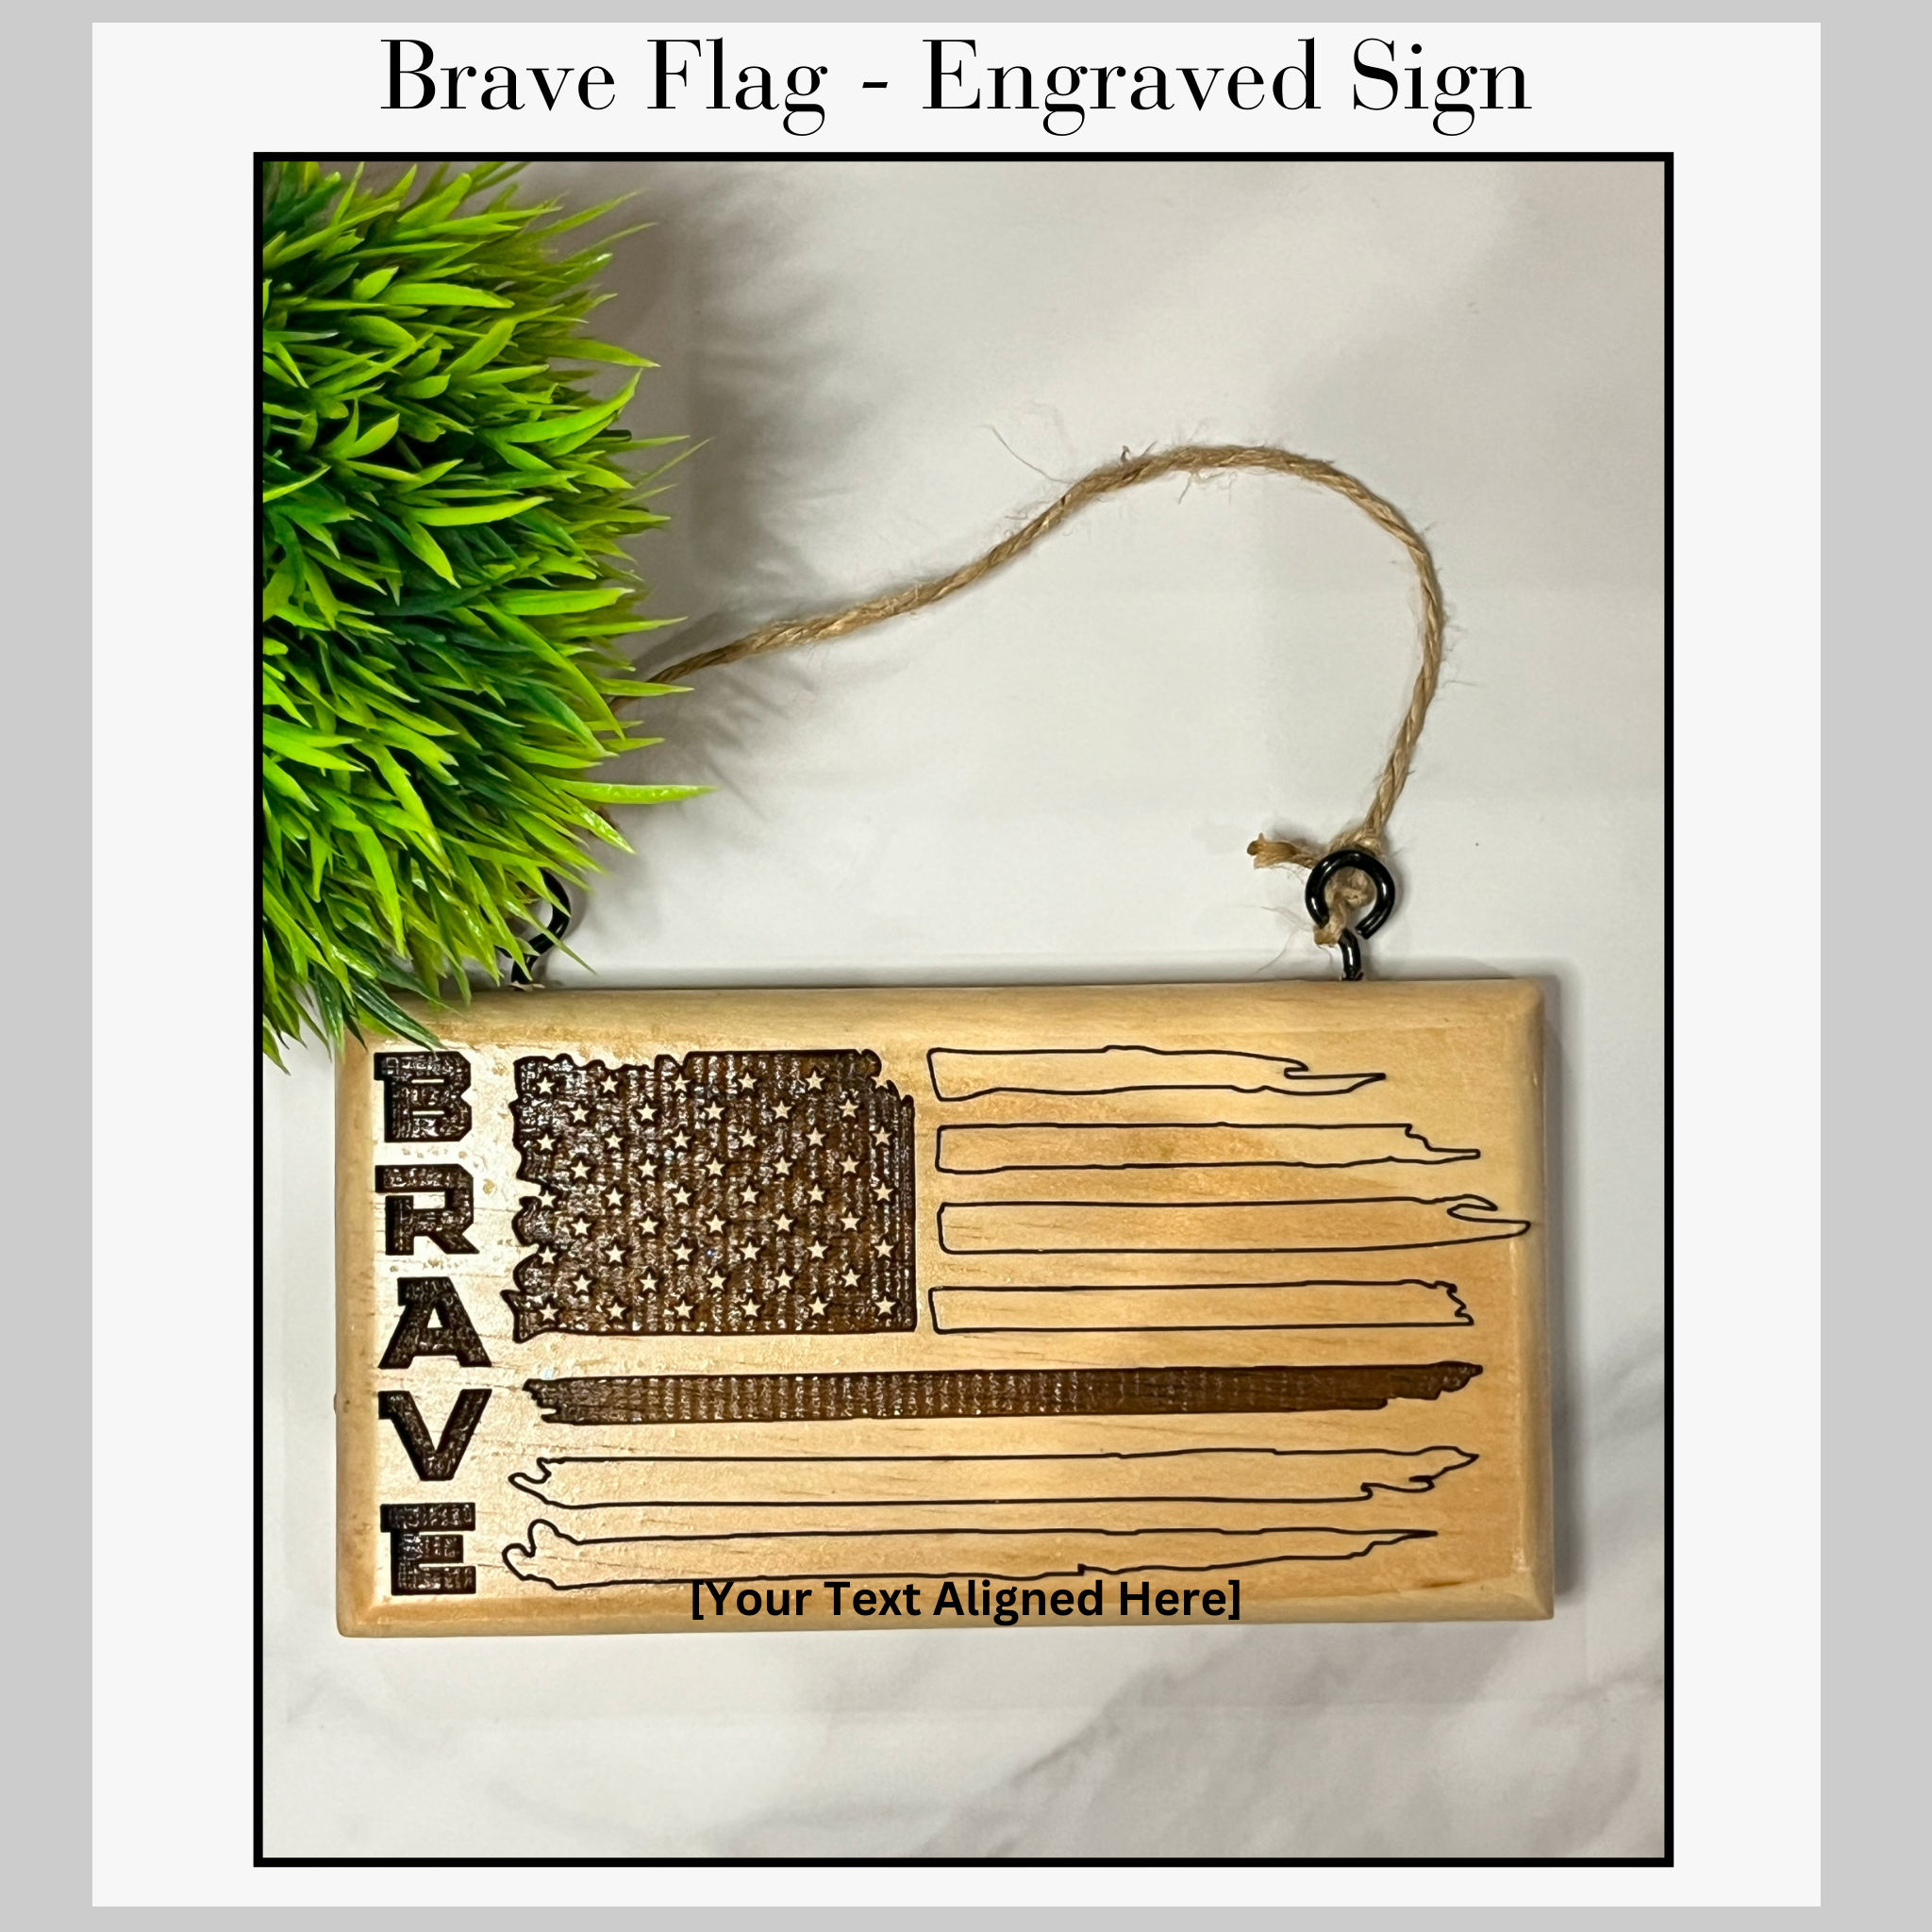 Engraved Sign - Brave First Responder